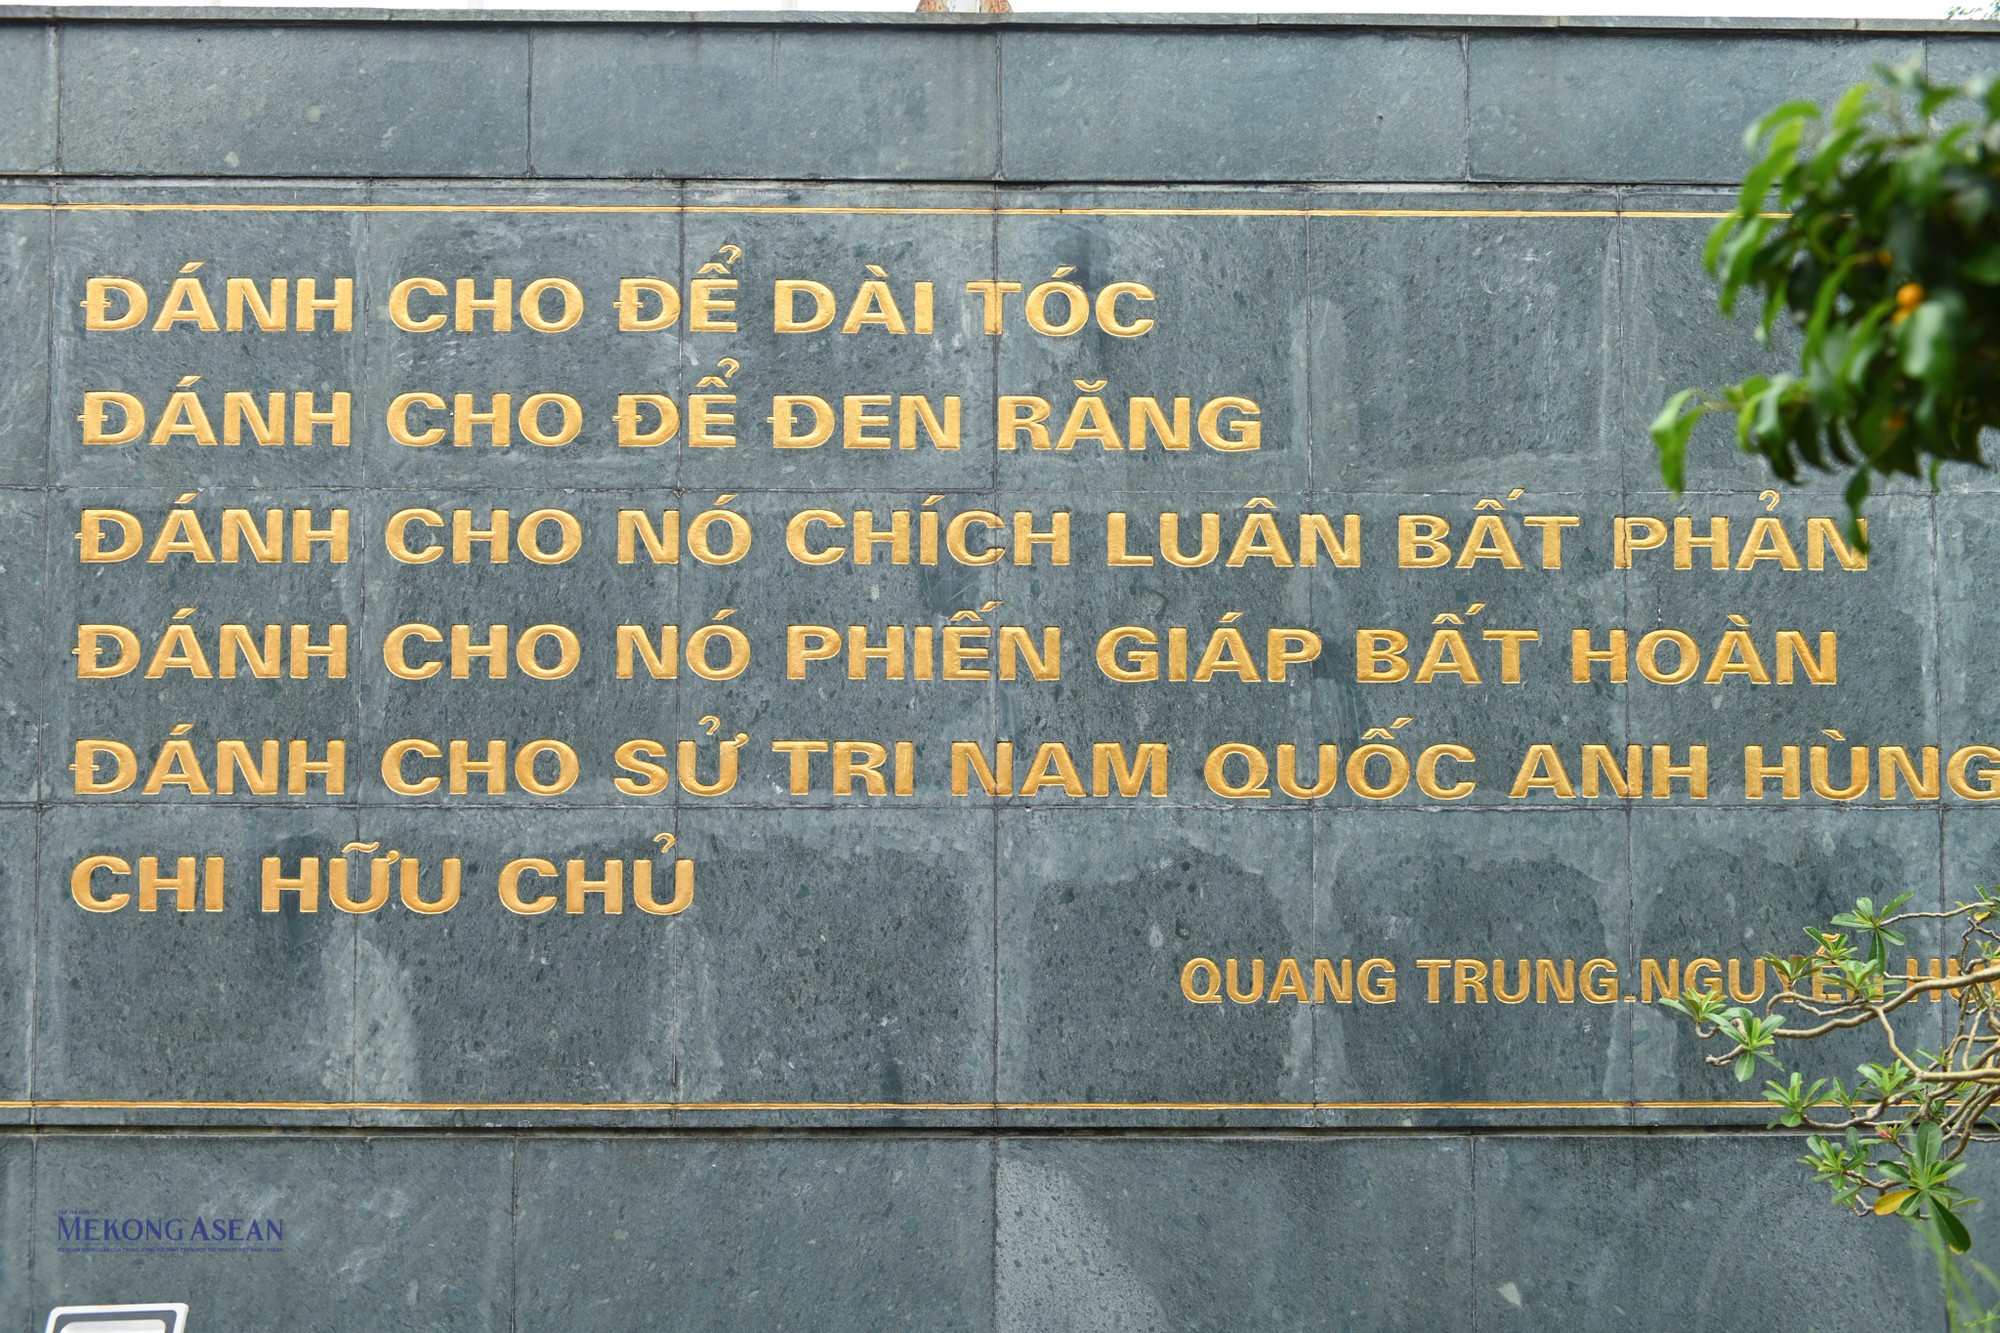  Ngắm các công trình tượng đài công cộng tại Hà Nội ảnh 8